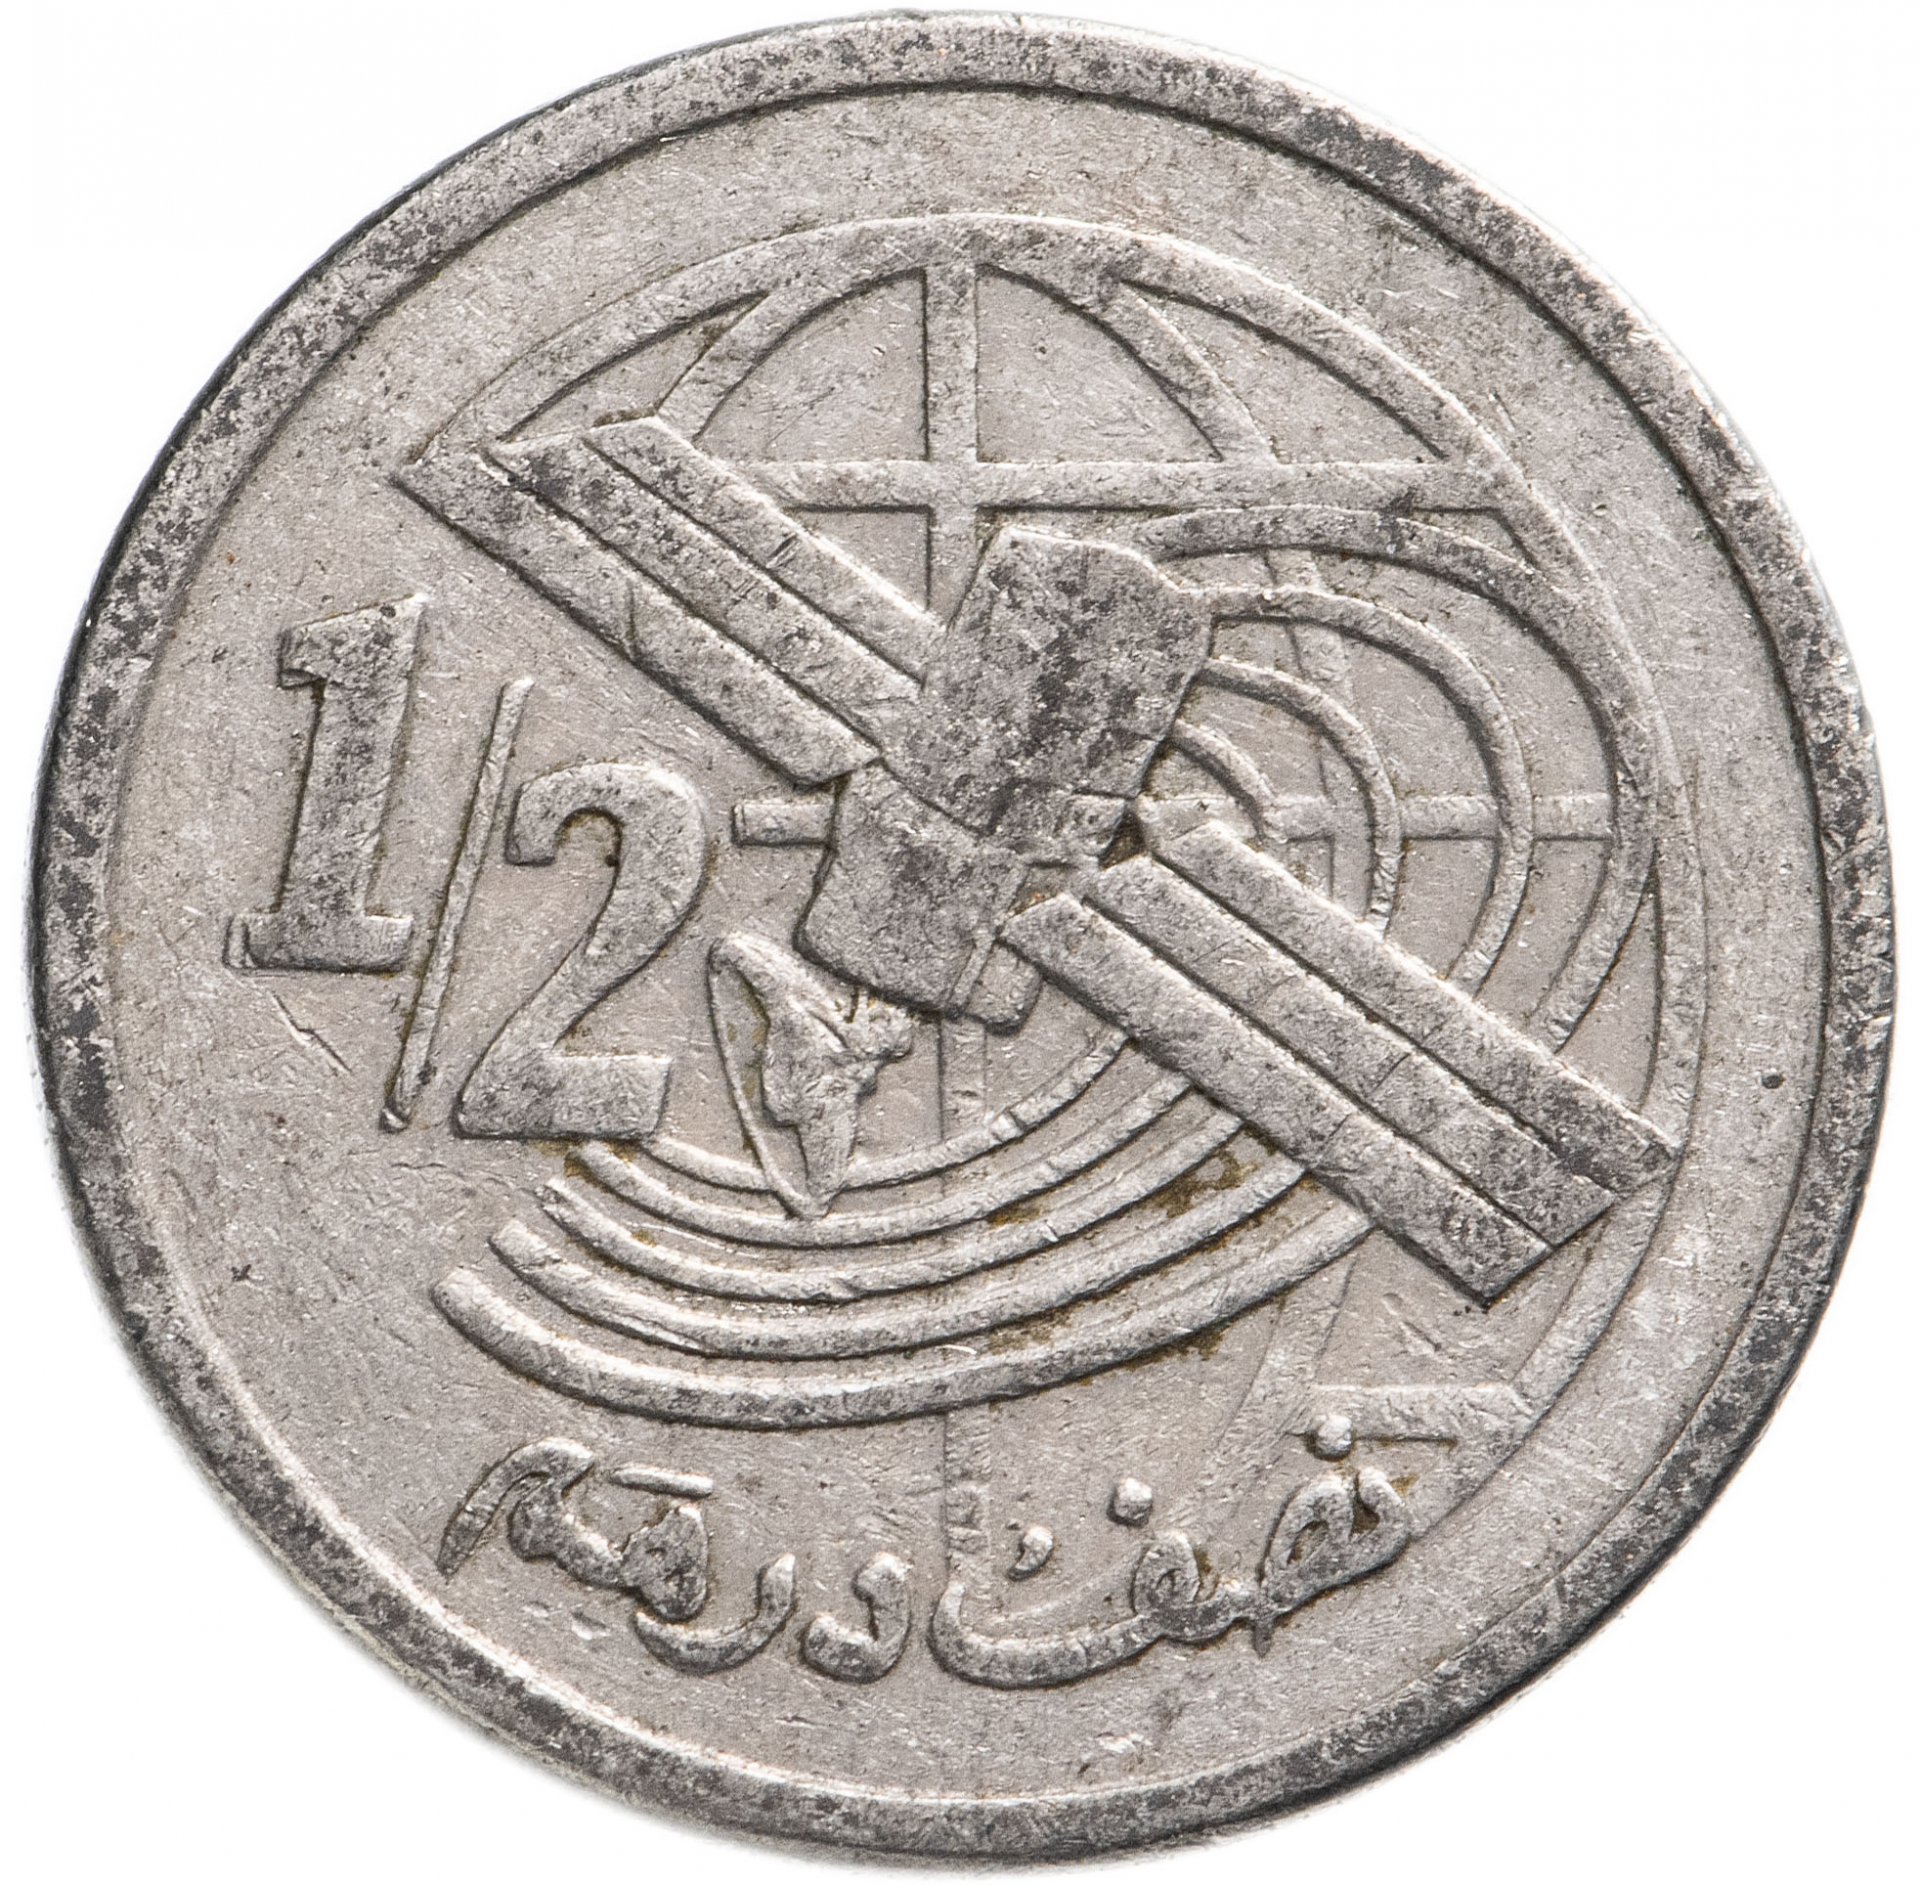 2 дирхама. 1/2 Дирхама 2002 Марокко. Монета дирхама 2002-1423. Марокканские монеты 1423-2002. Монета 1423-2002 1.